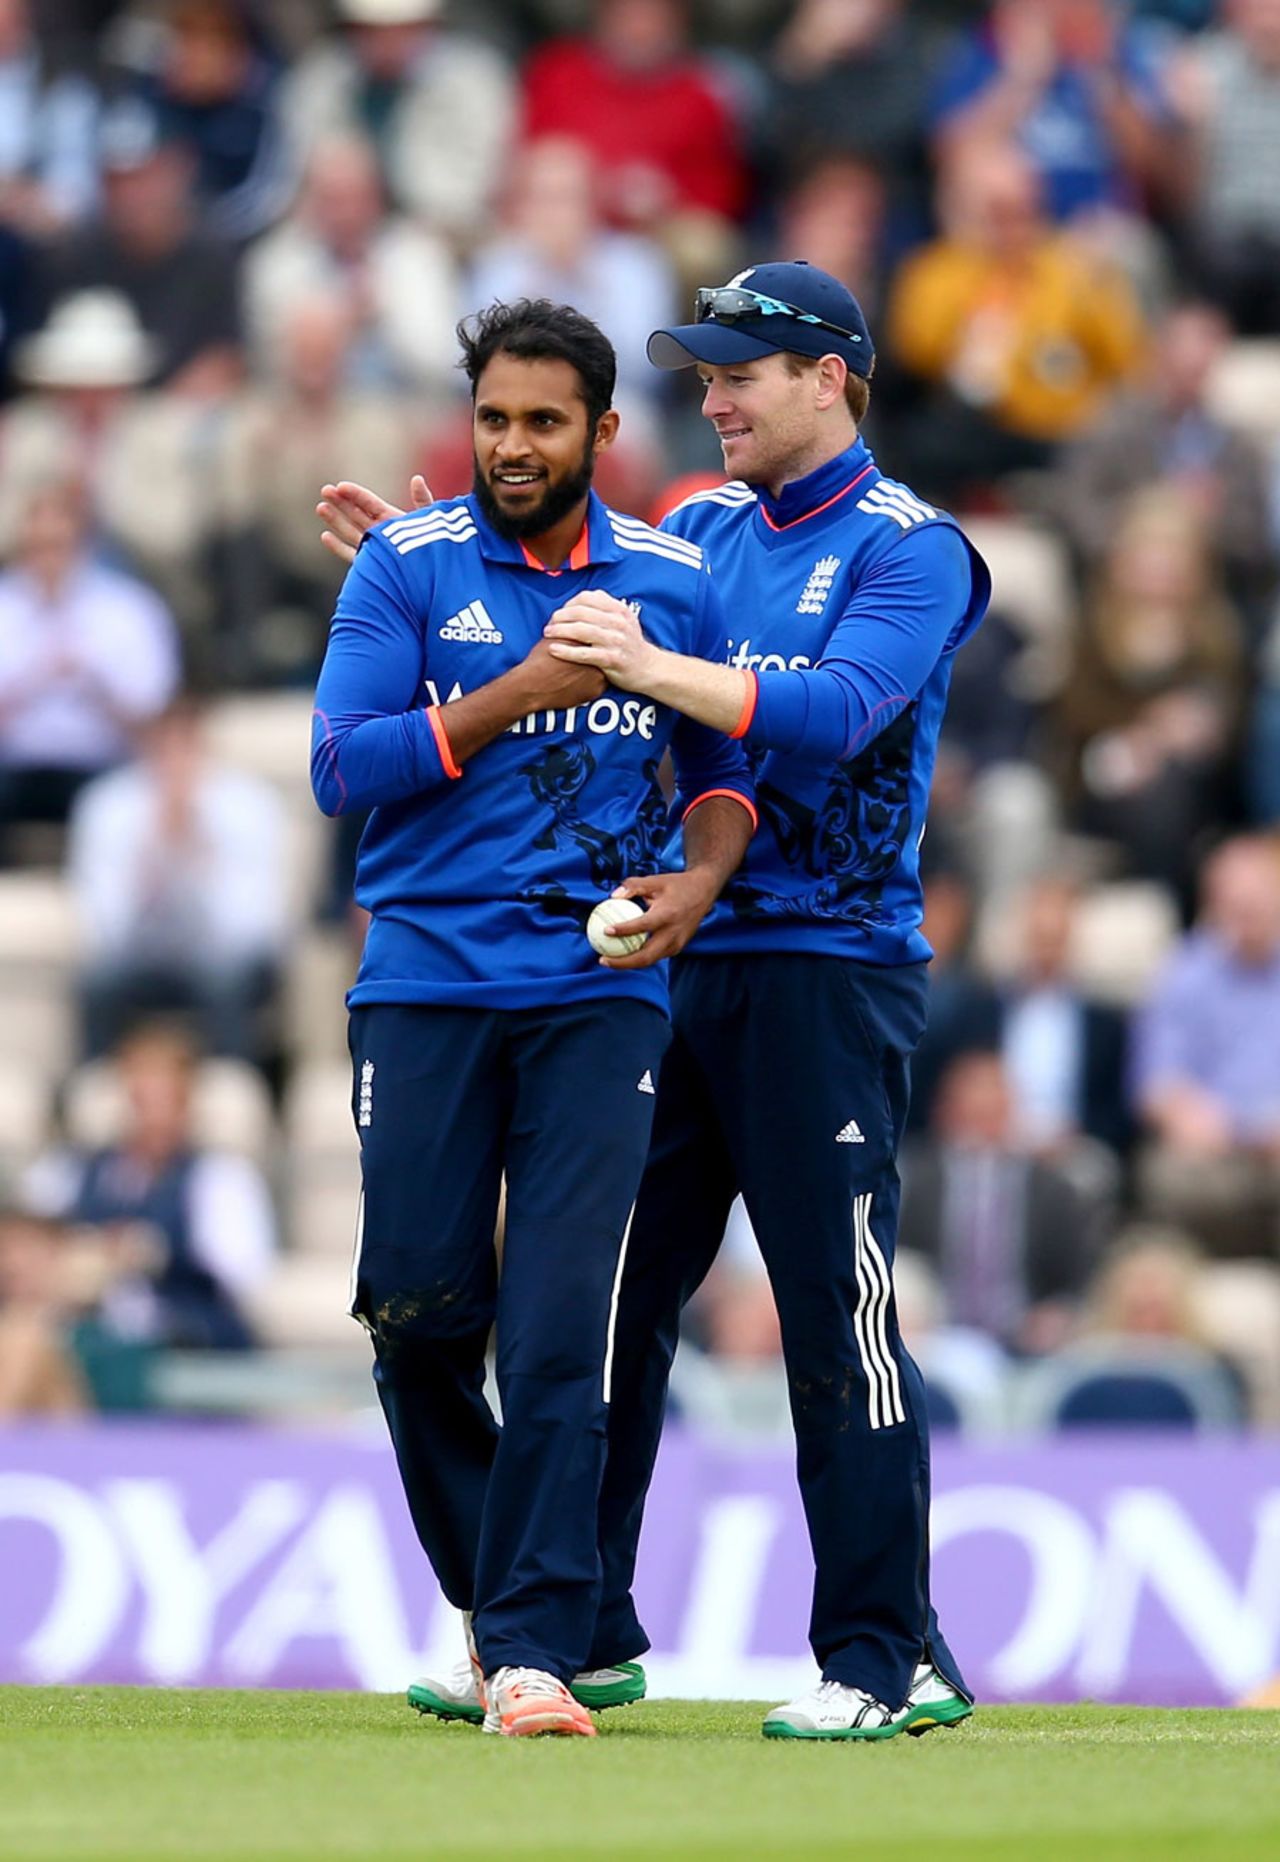 Adil Rashid made the breakthrough, England v Australia, 1st ODI, Ageas Bowl, September 3, 2015